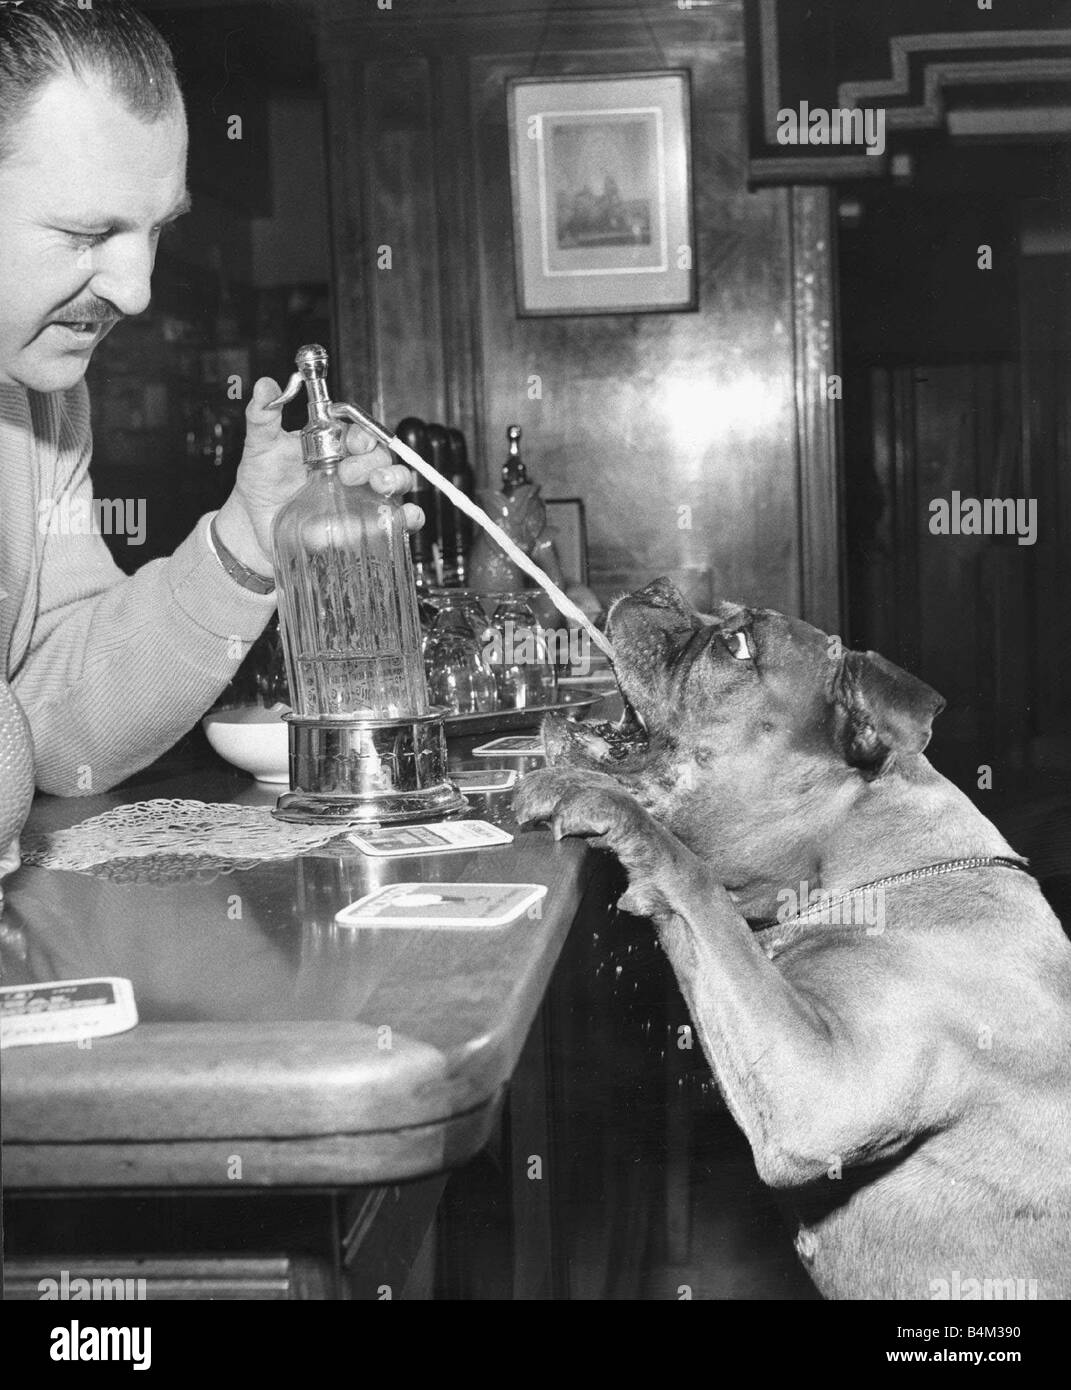 Ein Barkeeper spritzt ein Soda Siphon in einen Boxer Hunde Mund Tiere Hunde Boxer Boxer nette Pubs Tiere durstigen Hund Durst Stockfoto